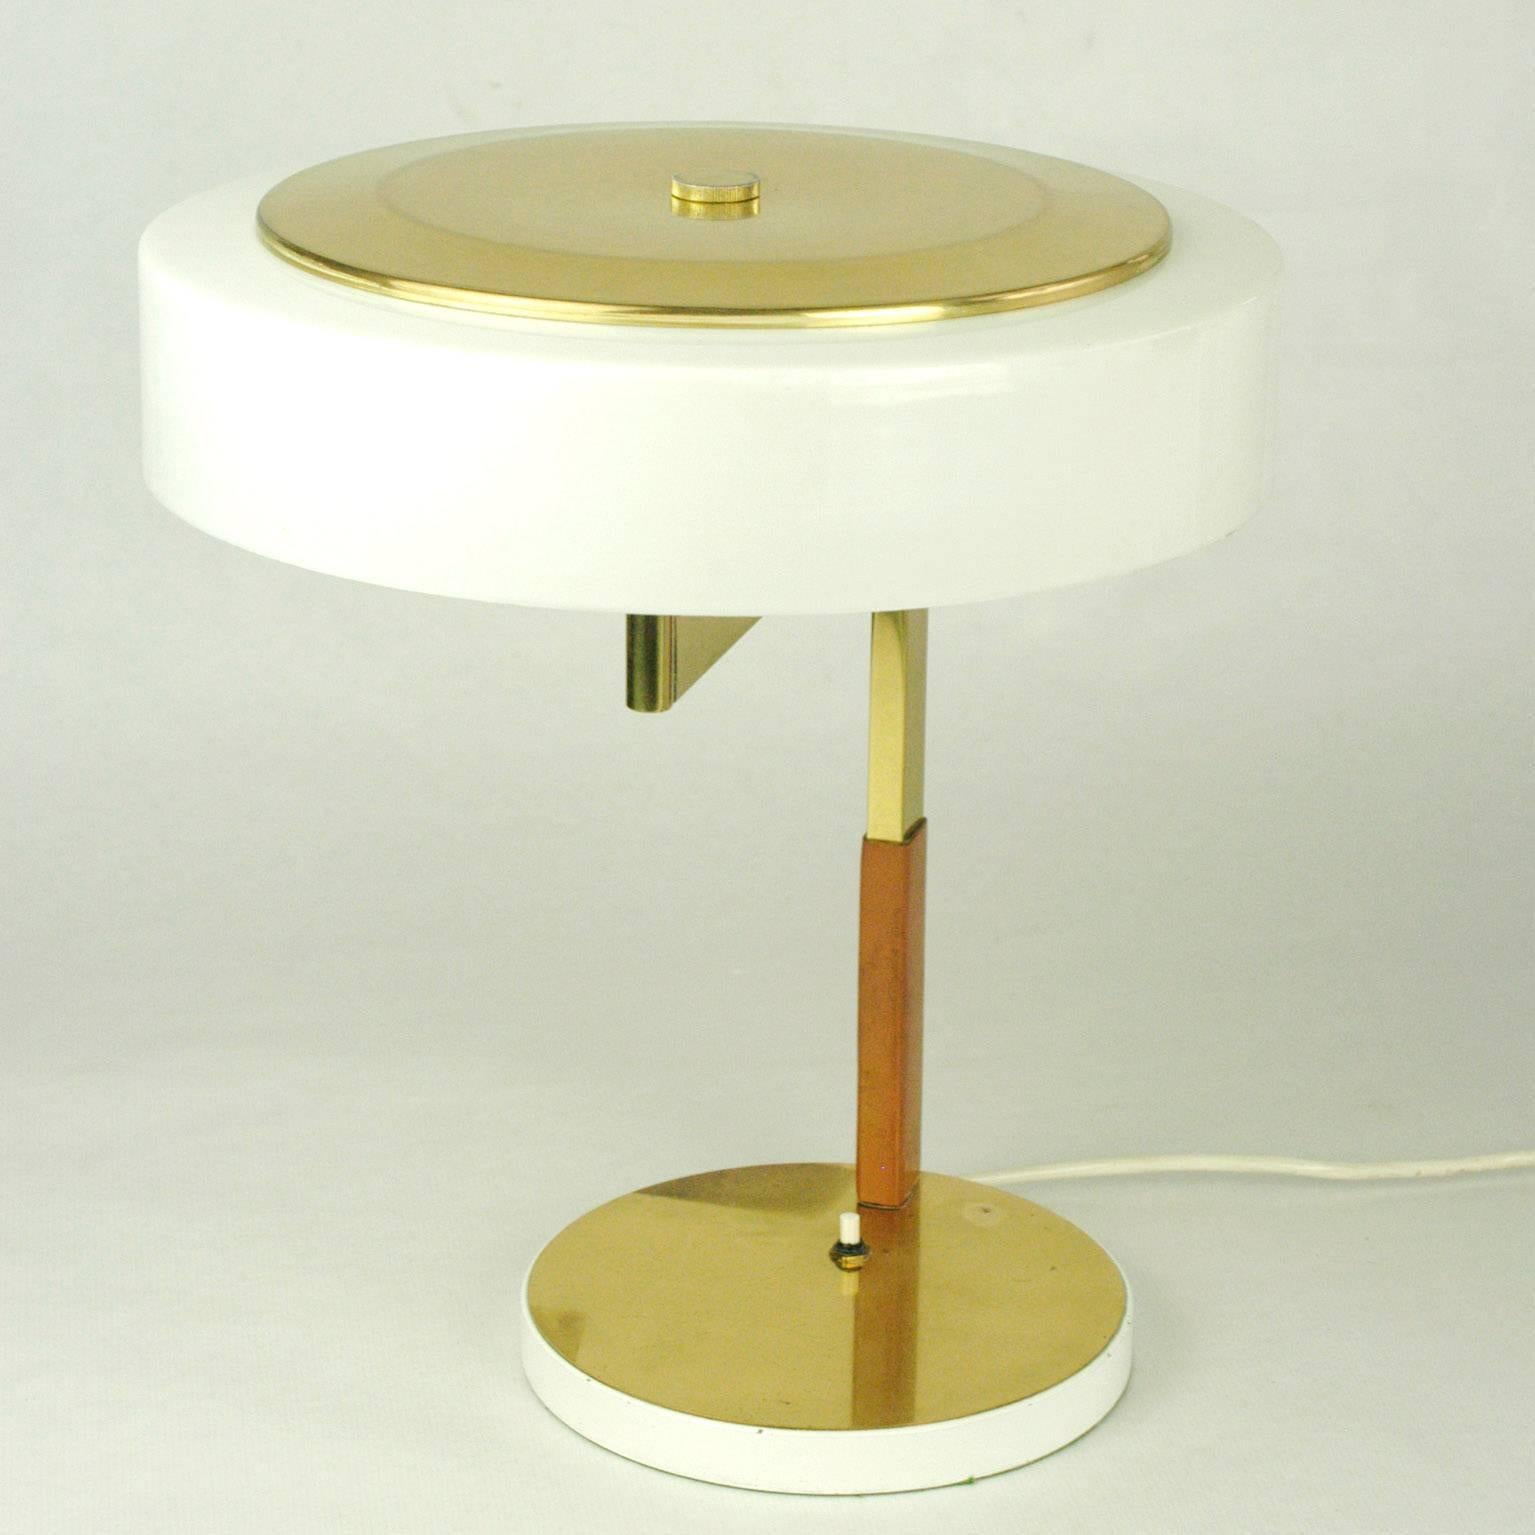 Ausgezeichnete österreichische Schreibtischlampe aus Messing, Leder und Acryl aus den 1960er Jahren mit verstellbarem Schirm, entworfen und hergestellt von J.T. Kalmar Wien.